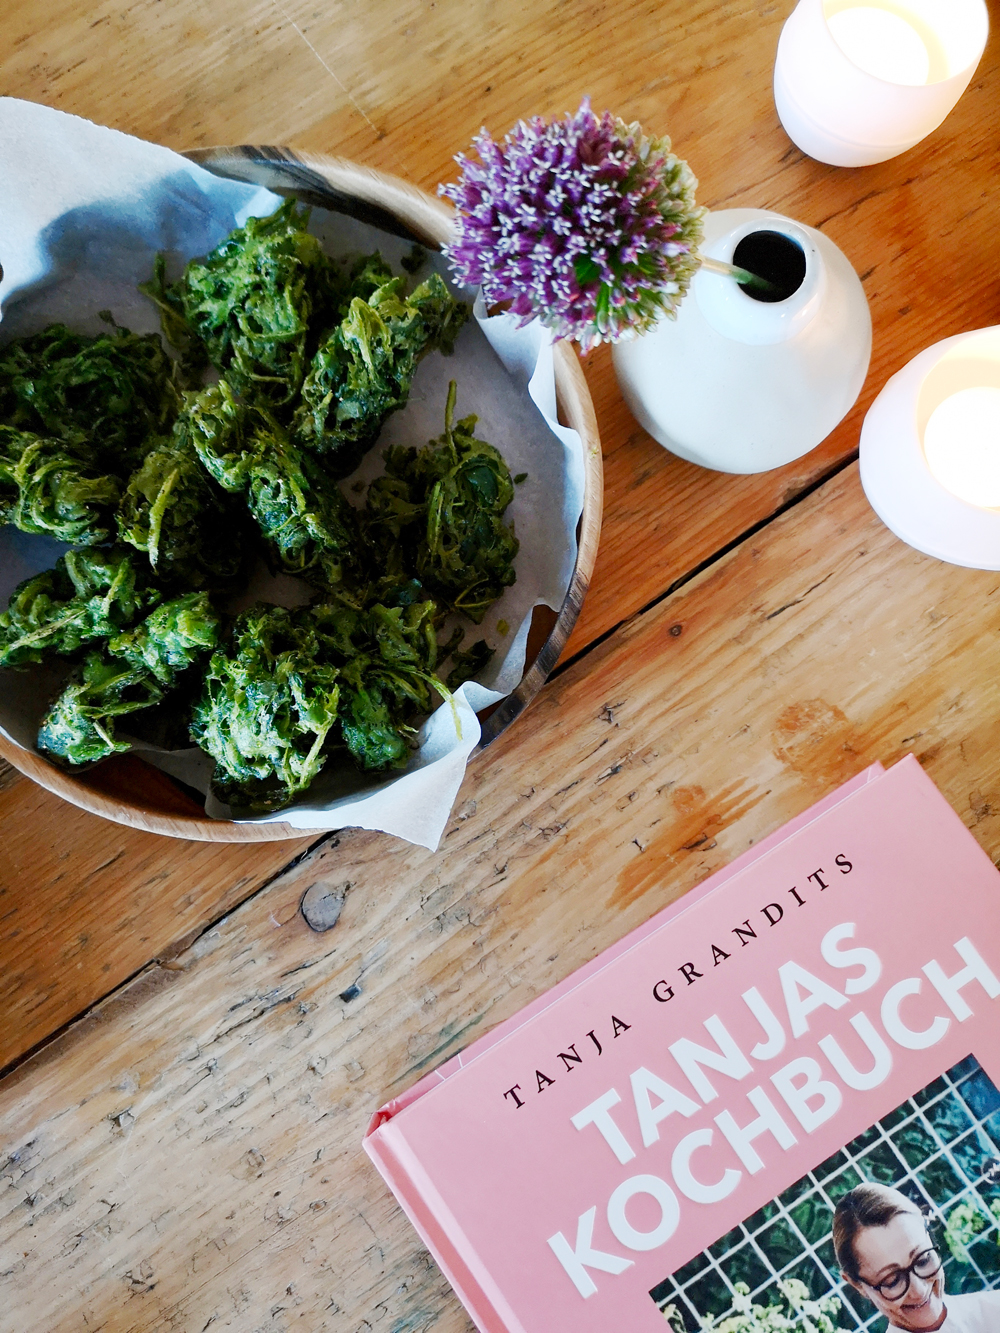 Sterneköchin Tanja Grandits zeigt in ihrem sechsten Buch "Tanjas Kochbuch" eine Sammlung ihrer Lieblingsrezepte aus dem Alltag, die einfach zu machen sind - und köstlich schmecken! 